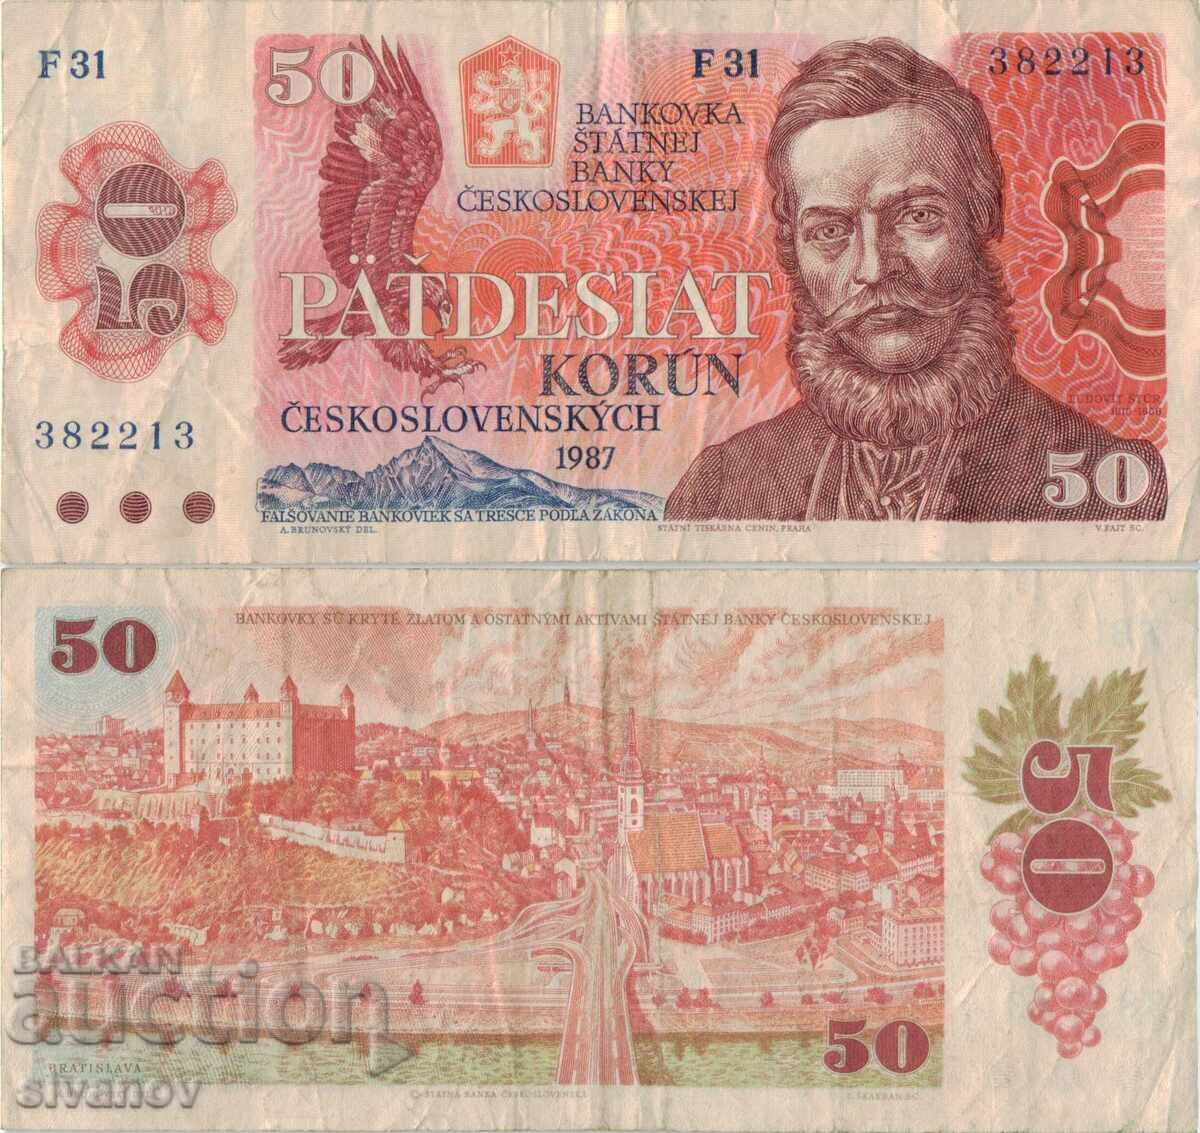 Czechoslovakia 50 kroner 1987 banknote #5258